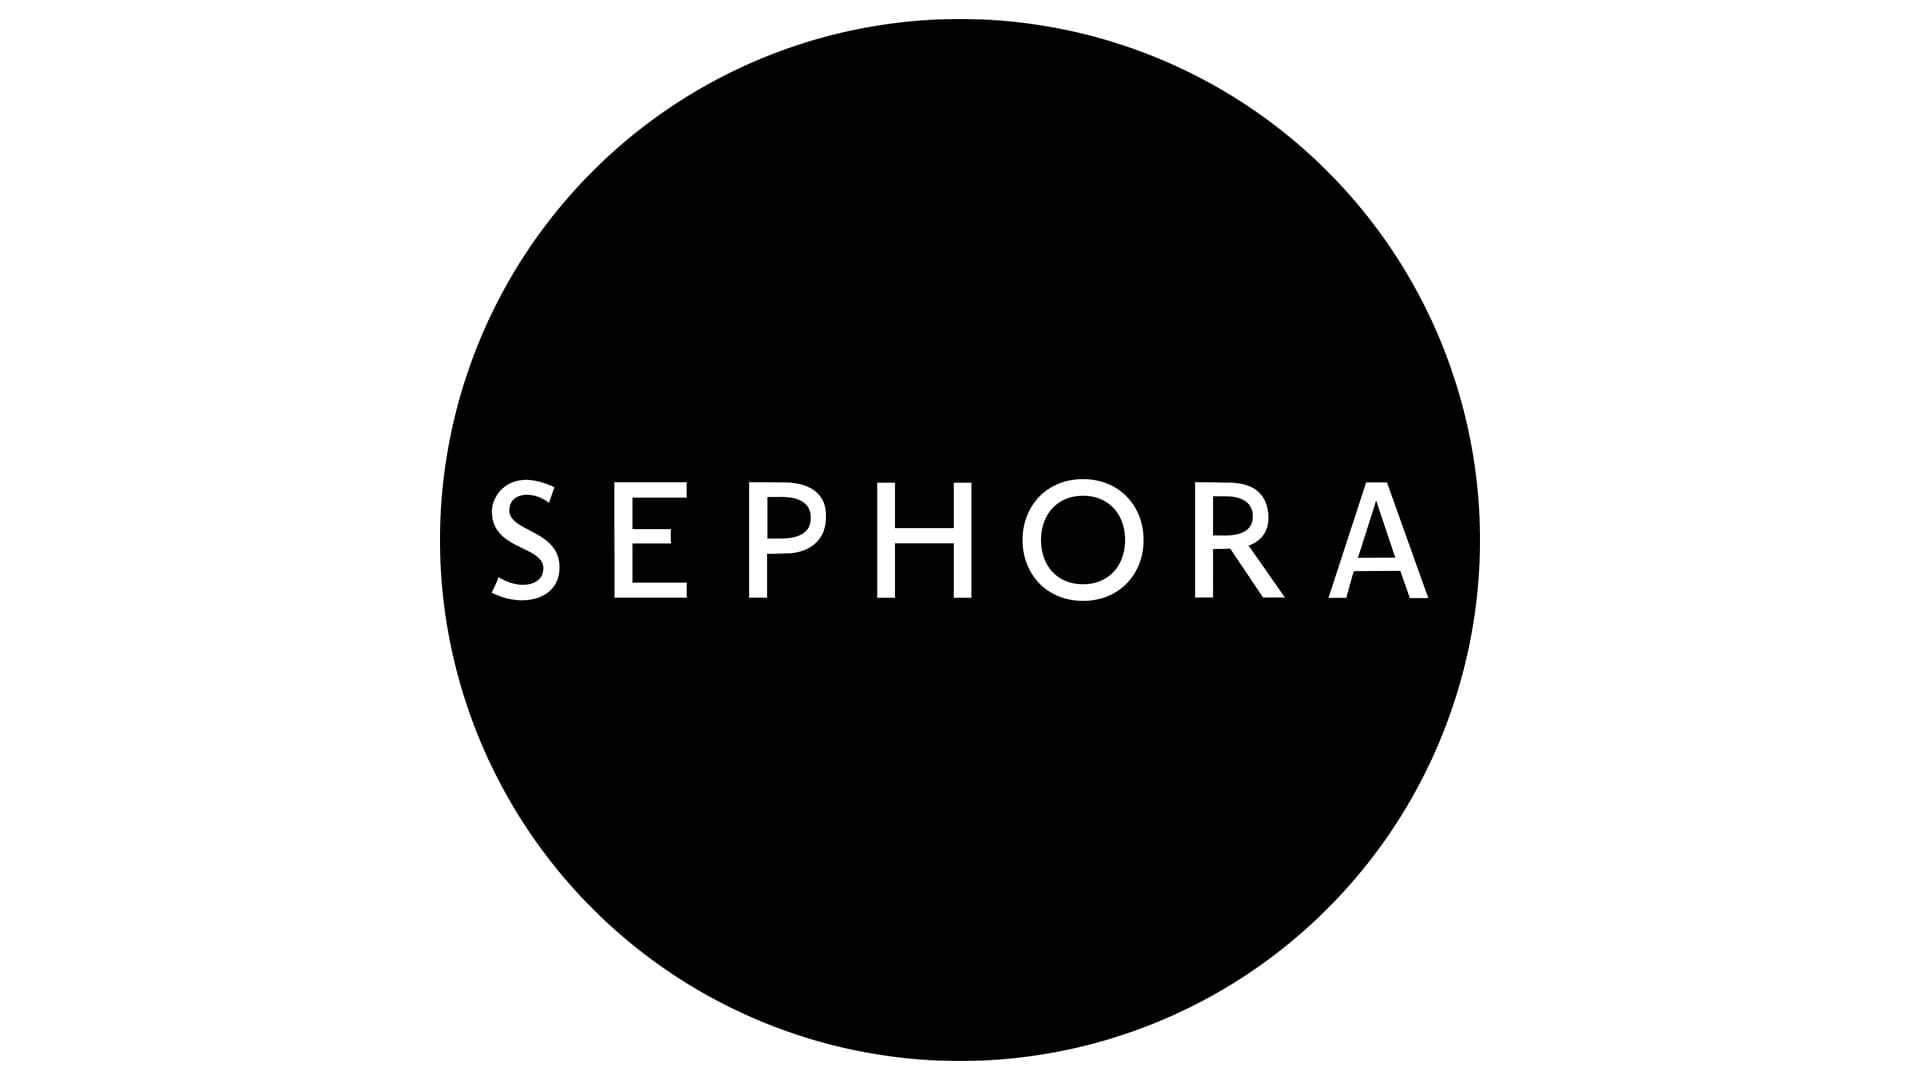 Sephora Logo histoire, signification de l'emblème